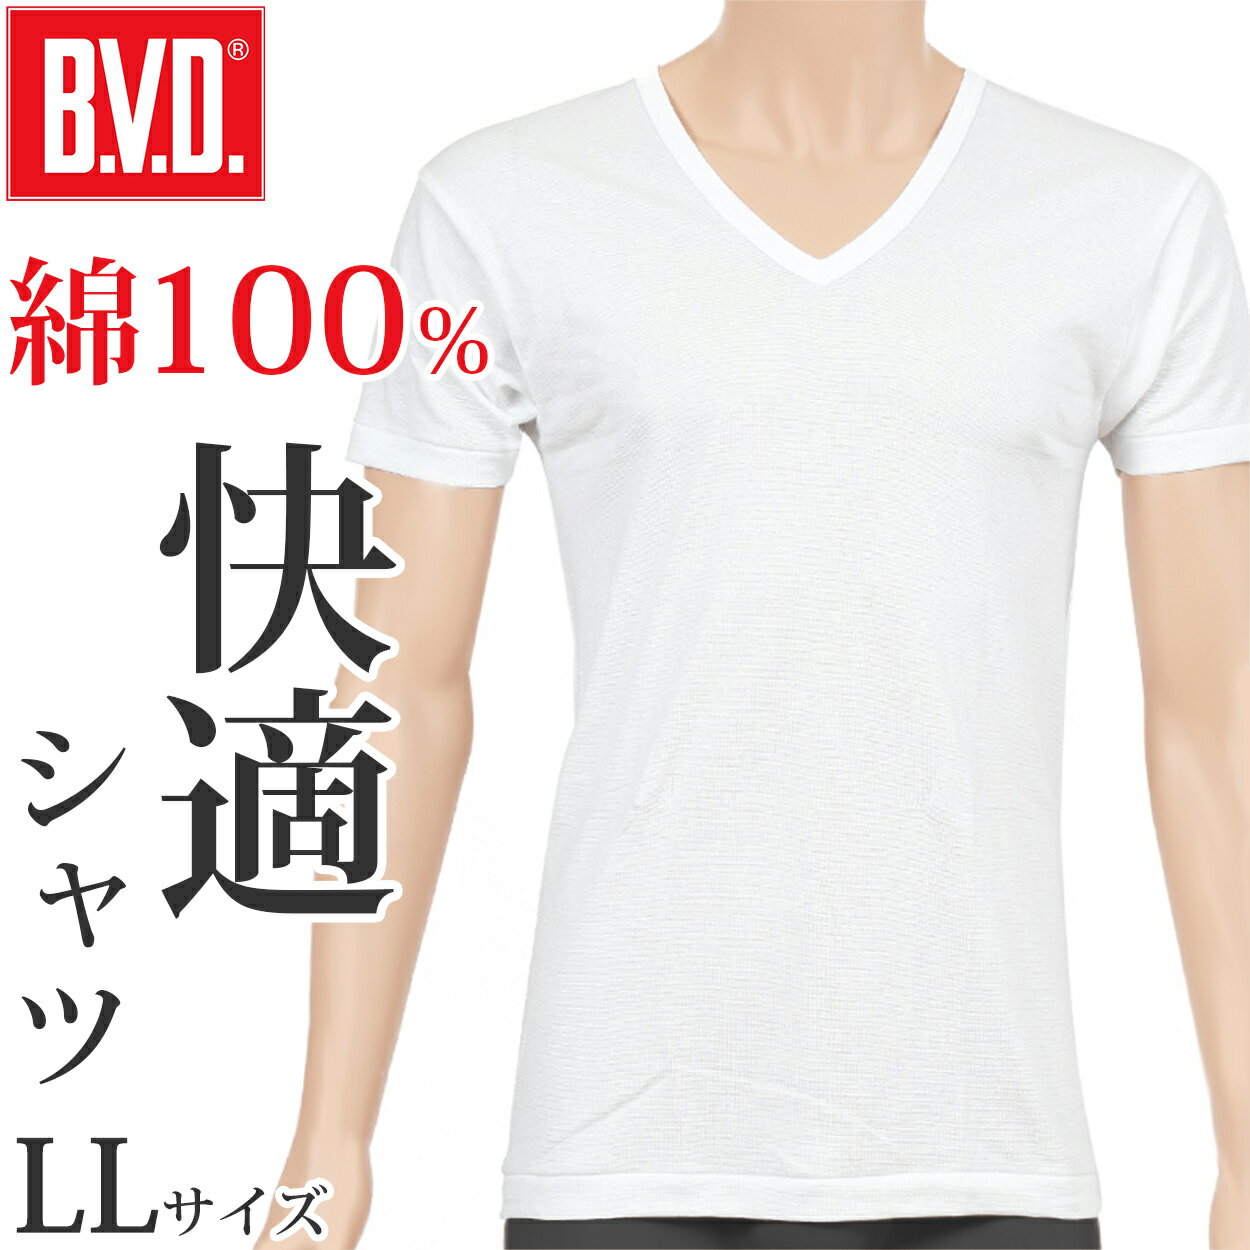 ◆B.V.D.GOLD 半袖VネックTシャツの紹介アメリカ発1世紀を経てもなお全世界から愛されるベーシックで高品質なアンダーウェア「BVD（ビーブイディー）」のメンズ（紳士・男性）用の半袖V首シャツです。（2Lサイズ相当）○肌触りの良い綿100%インナー素材はB.V.D.が得意とする、高品質なコットン100%で、肌触りが優しく、着心地がなめらかです。綿は吸湿性に優れているので、汗をかいても素早く吸収、水分を適度に放出してくれるので春夏の暑い季節や、スポーツや運動時のインナーとして最適です。天然素材なので、敏感肌や乾燥肌、アトピーなどの肌トラブルでお悩みの方にも、肌への刺激が少なくおすすめの肌着です。○厚めの生地、袖と衿も補強されていて耐久性抜群厚めで耐久性が高い生地のおかげで、洗濯を繰り返しても、へたりにくく、長く着ることができます。また、袖とVネックの衿にはバインダー補強がされているので、伸びにくいのが嬉しいポイントです。○着心地の良いカッティング技術BVD独自の生地のカッティング技術により、身体にしっかりと馴染み、快適な着心地です。○スタンダードで究極な「白シャツ」ただの白シャツでは・・・とあなどることなかれ！老舗BVDが長年にわたって培われたこだわりが着心地の良さに反映されています。快適な着心地は、お父さん（パパ）のスーツなど仕事着用の下着にもぴったり。ウォーキングやジョギング、ランニングなど運動やスポーツ用、トレーニング用の下着としても活躍すること間違いなし。キャンプや登山などのアウトドアにも活躍してくれるでしょう！もちろん、ルームウェアや部屋着としてこれ一枚で着こなしてリラックスするのもおすすめです！※こちらの商品は「G234」の後継品の「G044」です。首部分のバインダーが太いものから細いものに変わっていますので、ご了承の上お買い求めいただくようお願い申し上げます。◆B.V.D.GOLD 半袖VネックTシャツの詳細商品名B.V.D.GOLD 半袖VネックTシャツ対象者メンズ(男性 紳士 男子)普段使い ルームウェア 部屋着運動 スポーツ ウォーキング ジョギング ランニングジム トレーニング 筋トレアウトドア キャンプ 登山サイズLL(身長:175-185cm/胸囲:104-112cm)カラーホワイト素材・加工綿100%半袖 吸湿性 コットン 耐久性生産国日本企画海外製関連キーワード.V.D. GOLD 定番 スタンダード ゴールド コットン しまむらファンにおすすめ m-ss-v G044ABVD メンズ 半袖シャツ Vネック 綿100％この商品を買った人はこんな商品も買っています◆おすすめのカテゴリ アメリカ発1世紀を経てもなお全世界から愛されるベーシックで高品質なアンダーウェア「BVD（ビーブイディー）」のメンズ（紳士・男性）用の半袖V首シャツです。（2Lサイズ相当）○肌触りの良い綿100%インナー素材はB.V.D.が得意とする、高品質なコットン100%で、肌触りが優しく、着心地がなめらかです。綿は吸湿性に優れているので、汗をかいても素早く吸収、水分を適度に放出してくれるので春夏の暑い季節や、スポーツや運動時のインナーとして最適です。天然素材なので、敏感肌や乾燥肌、アトピーなどの肌トラブルでお悩みの方にも、肌への刺激が少なくおすすめの肌着です。○厚めの生地、袖と衿も補強されていて耐久性抜群厚めで耐久性が高い生地のおかげで、洗濯を繰り返しても、へたりにくく、長く着ることができます。また、袖とVネックの衿にはバインダー補強がされているので、伸びにくいのが嬉しいポイントです。○着心地の良いカッティング技術BVD独自の生地のカッティング技術により、身体にしっかりと馴染み、快適な着心地です。○スタンダードで究極な「白シャツ」ただの白シャツでは・・・とあなどることなかれ！老舗BVDが長年にわたって培われたこだわりが着心地の良さに反映されています。快適な着心地は、お父さん（パパ）のスーツなど仕事着用の下着にもぴったり。ウォーキングやジョギング、ランニングなど運動やスポーツ用、トレーニング用の下着としても活躍すること間違いなし。キャンプや登山などのアウトドアにも活躍してくれるでしょう！もちろん、ルームウェアや部屋着としてこれ一枚で着こなしてリラックスするのもおすすめです！※こちらの商品は「G234」の後継品の「G044」です。首部分のバインダーが太いものから細いものに変わっていますので、ご了承の上お買い求めいただくようお願い申し上げます。